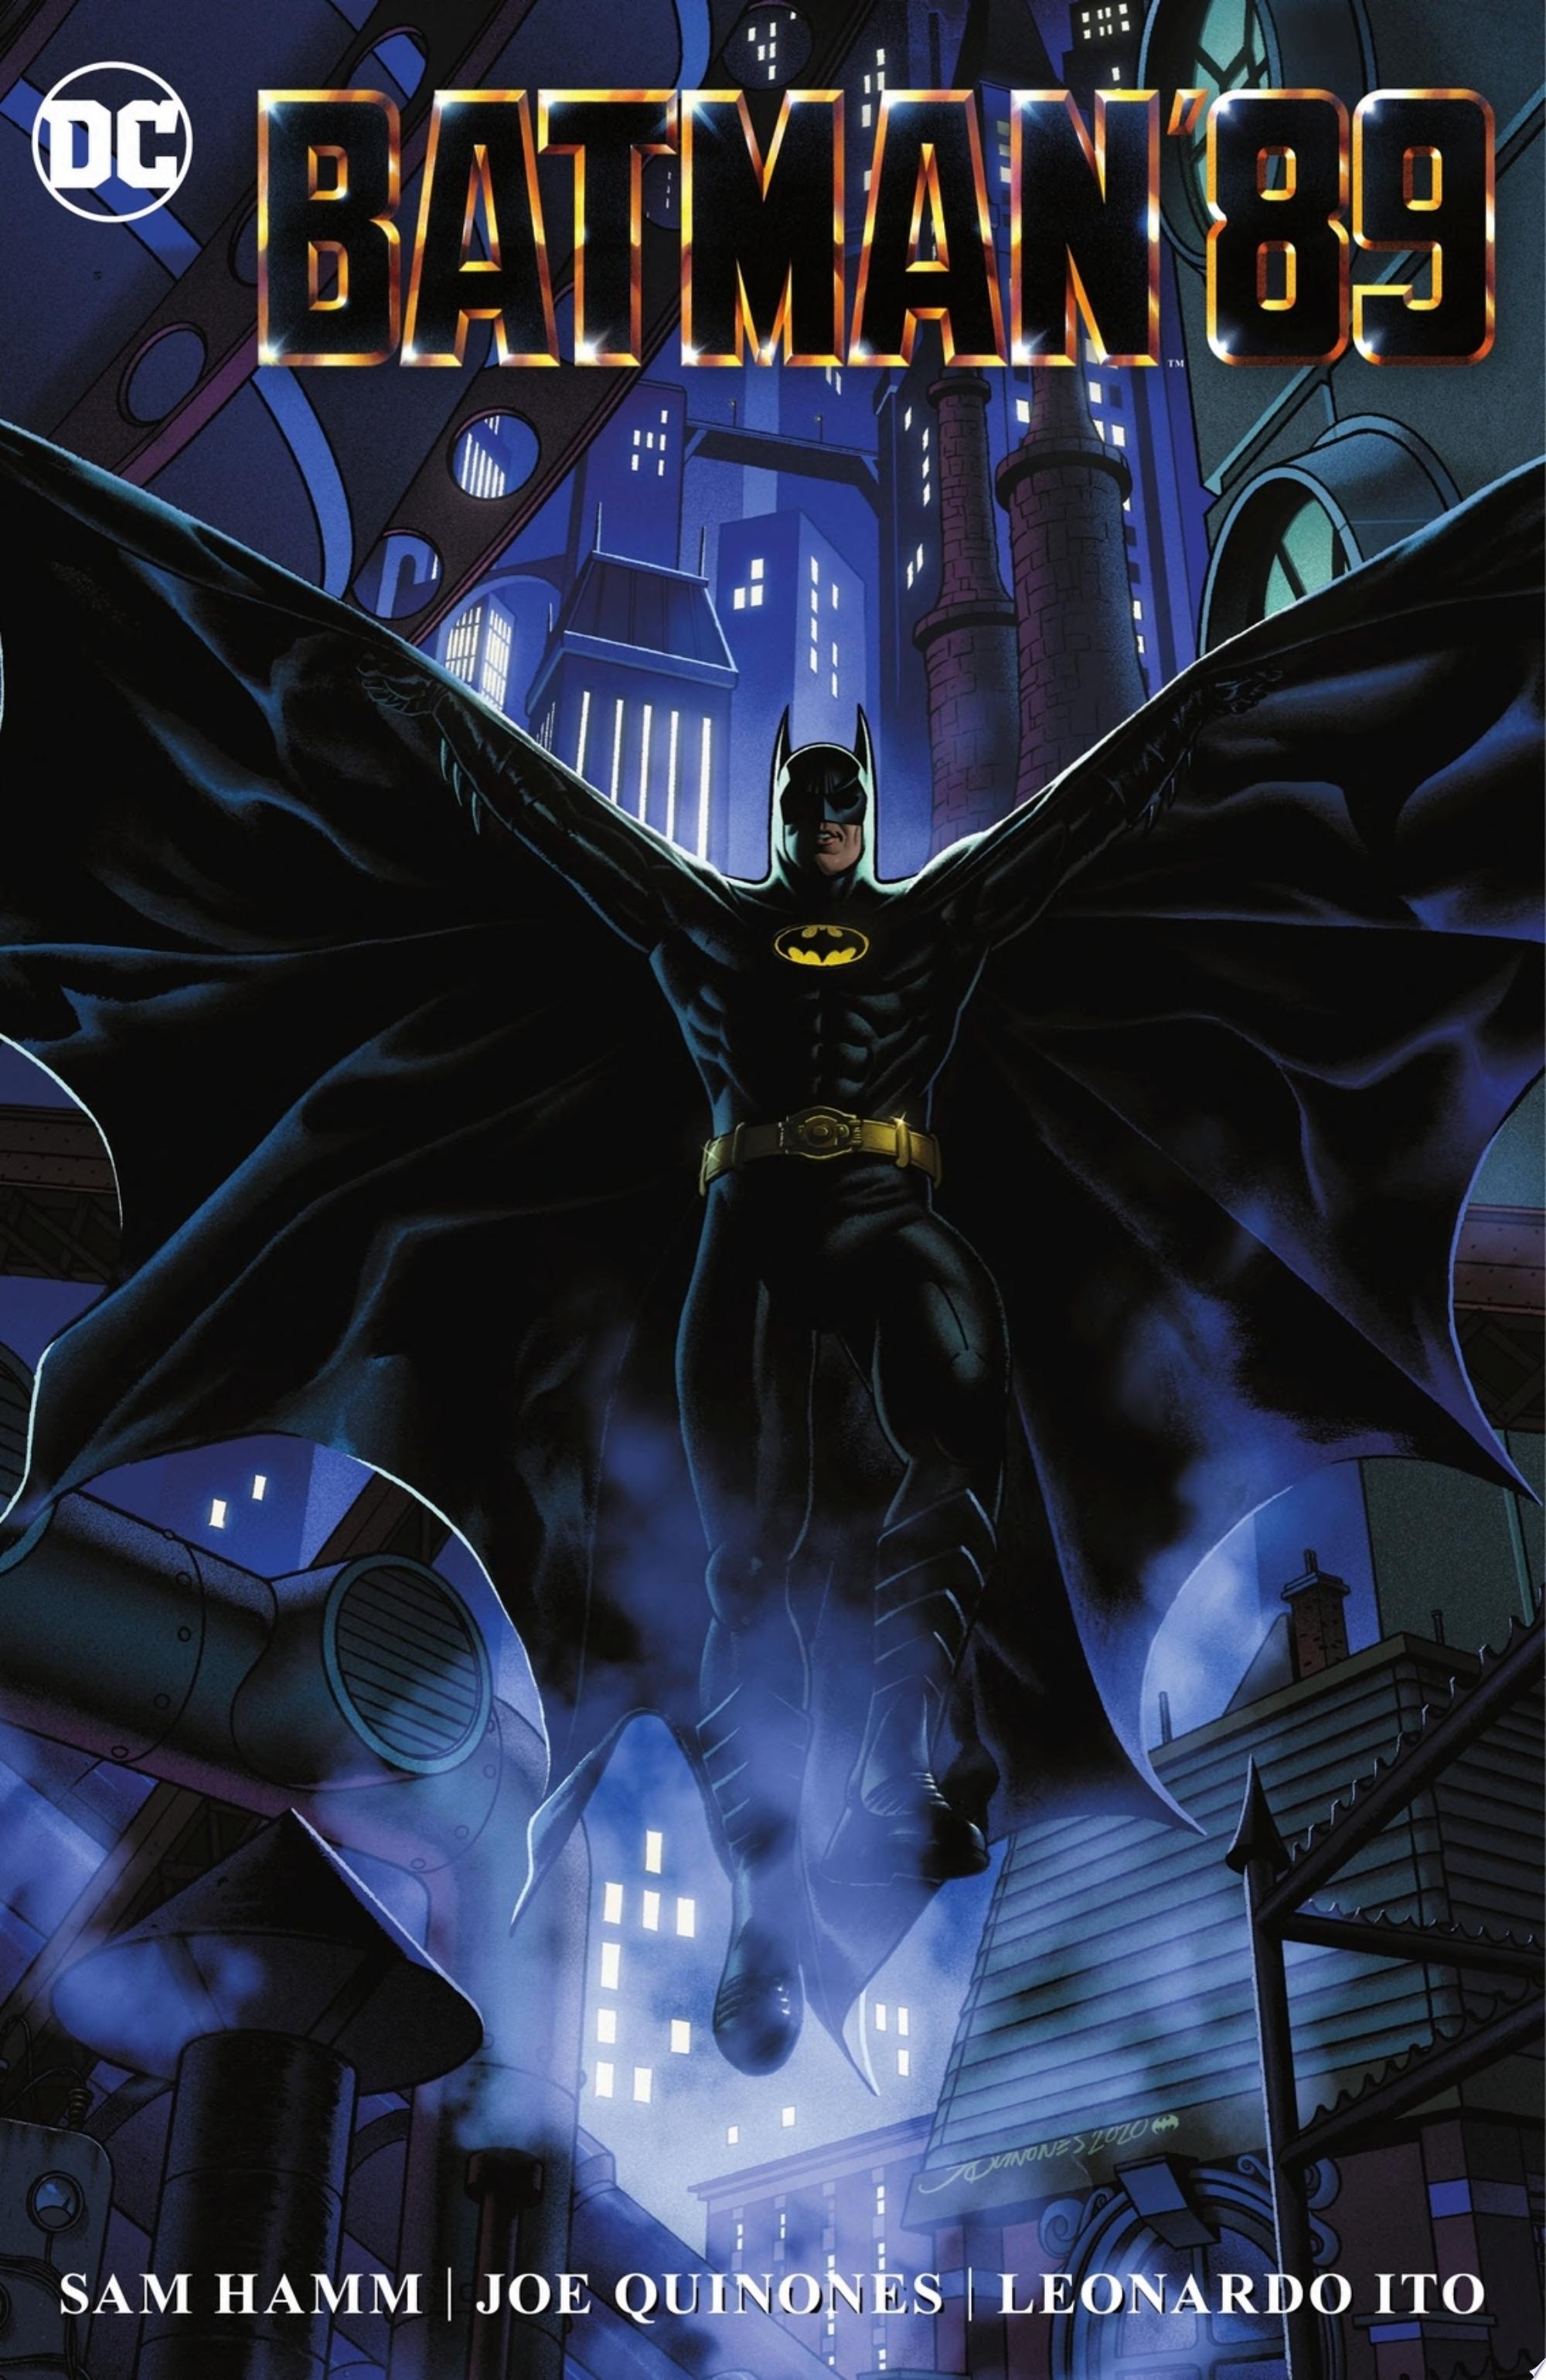 Image for "Batman &#039;89"